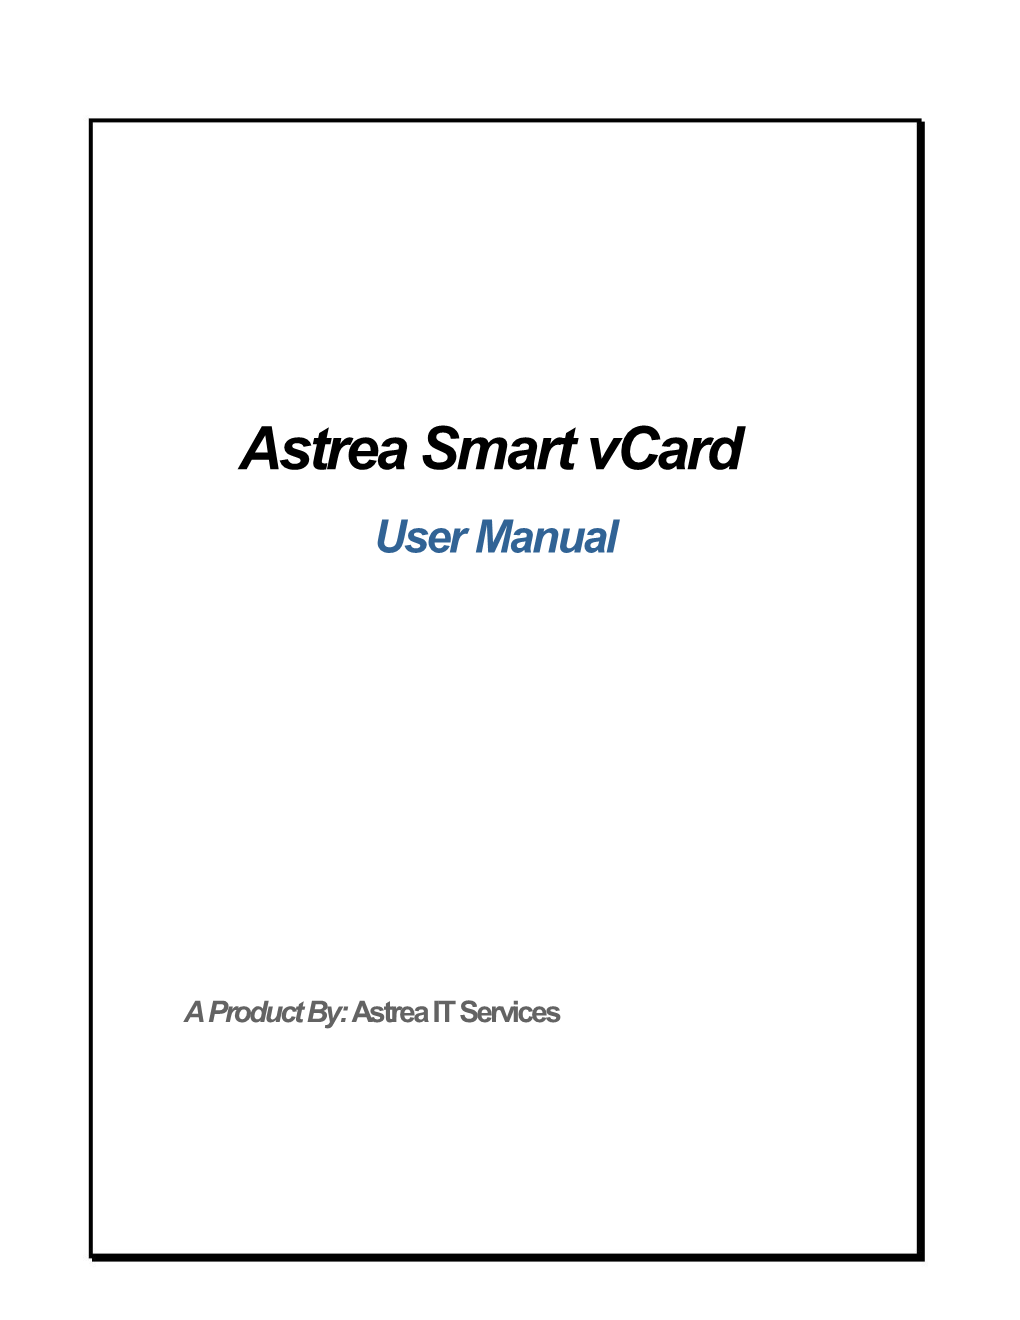 Astrea Smart Vcard